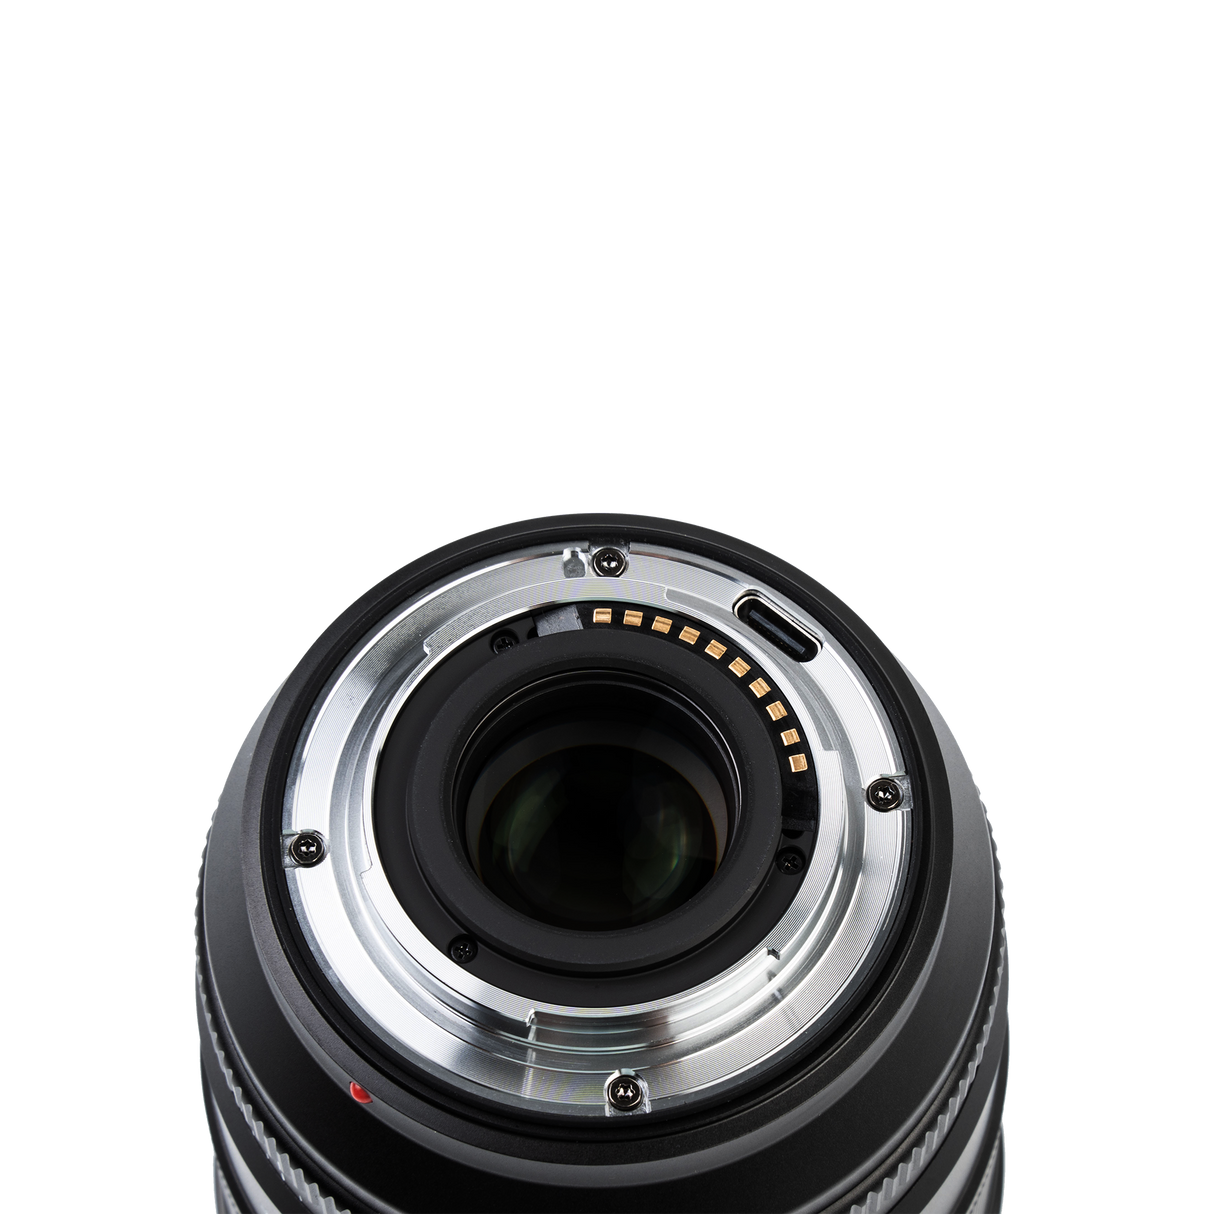 Lens af 27mm f/1.2 pro xf for fuji